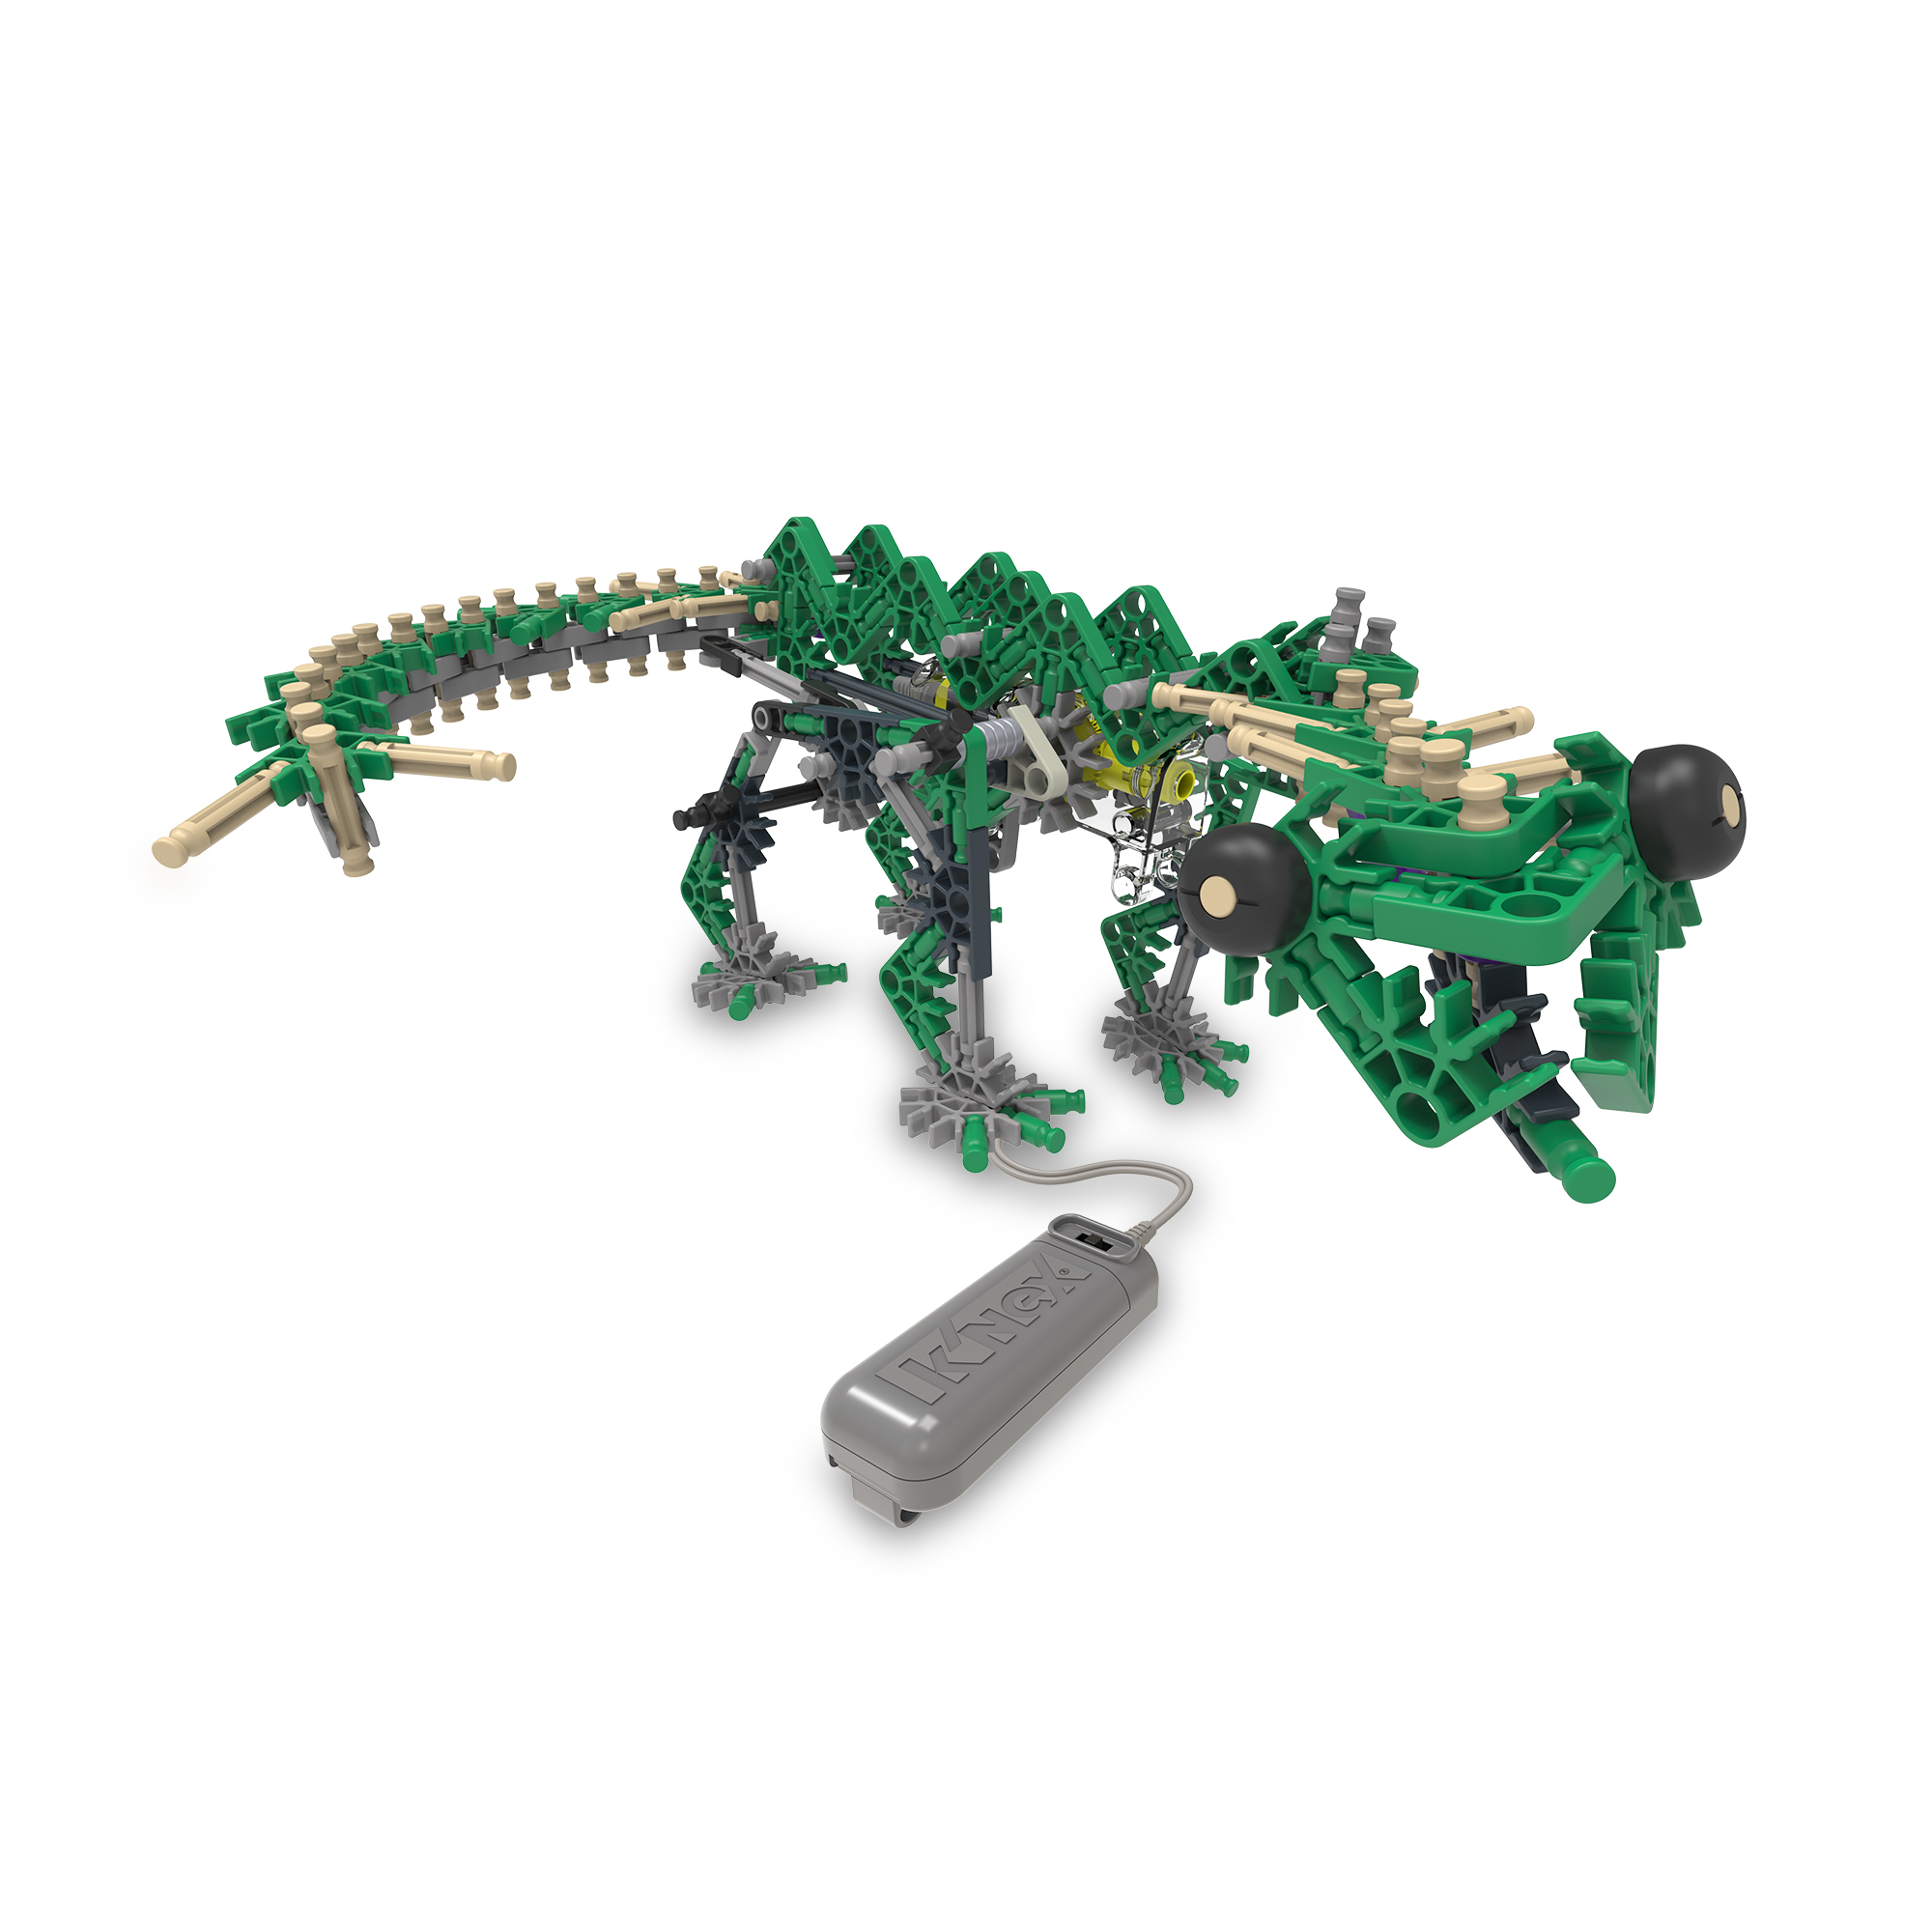 Knexosaurus rex